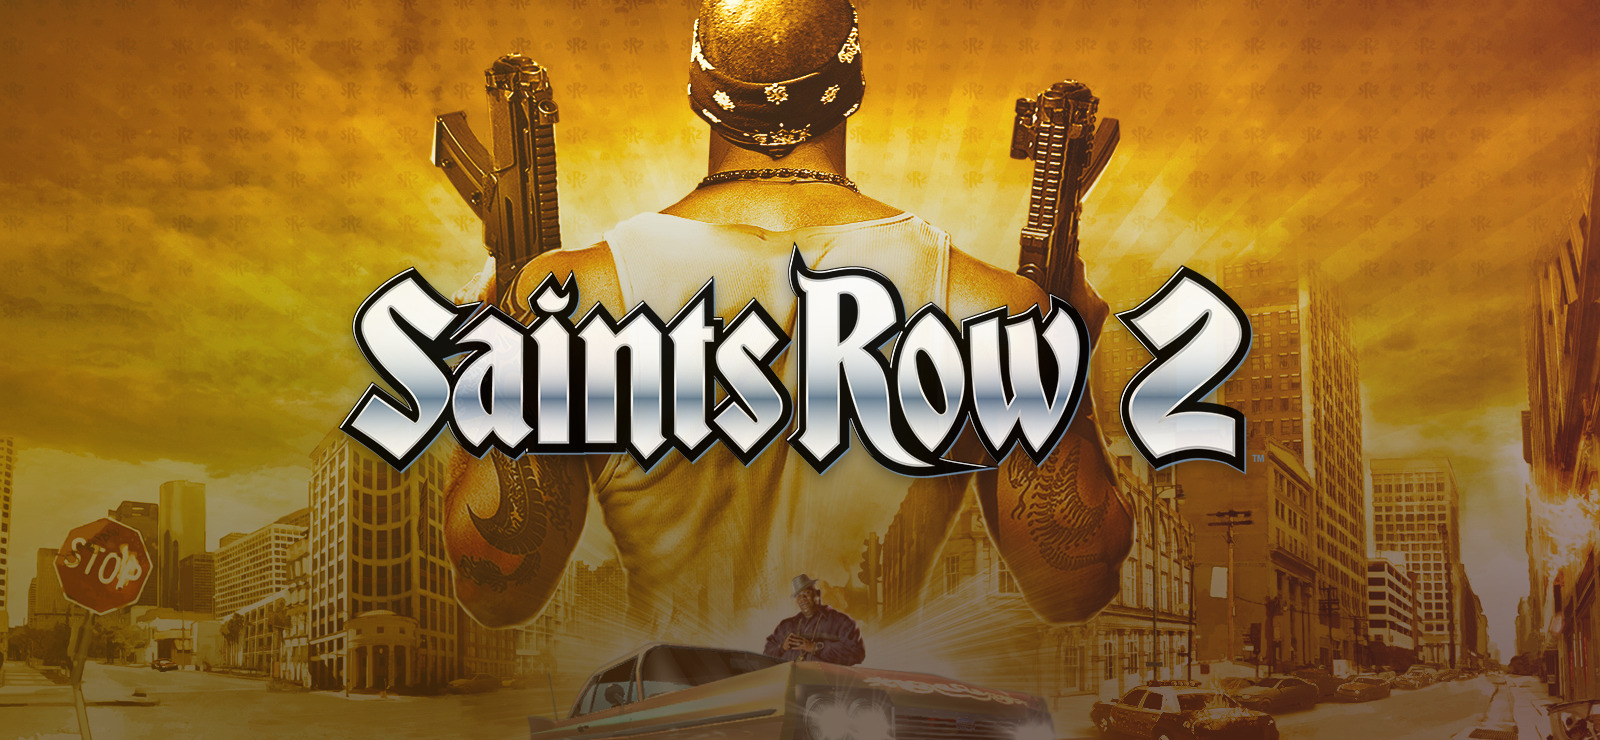 Kanin sammenhængende Envision Saints Row 2 on GOG.com